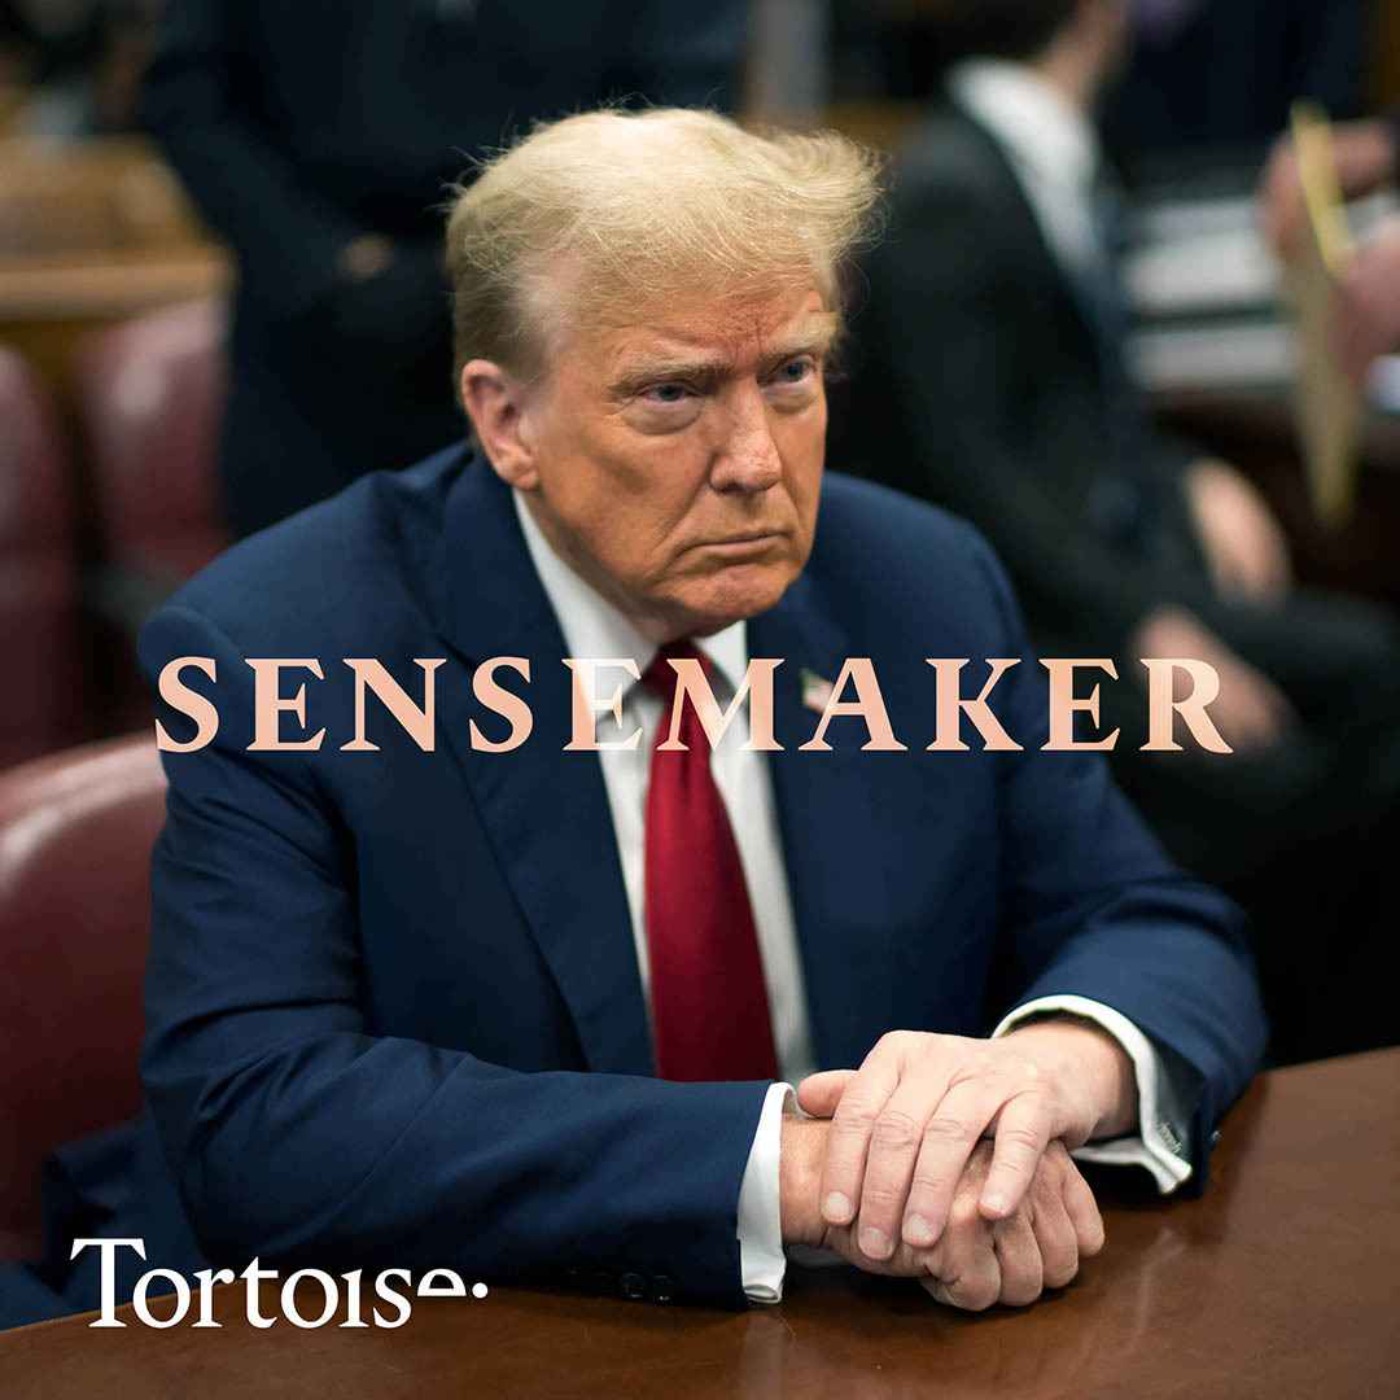 Sensemaker: Trump’s first week in court